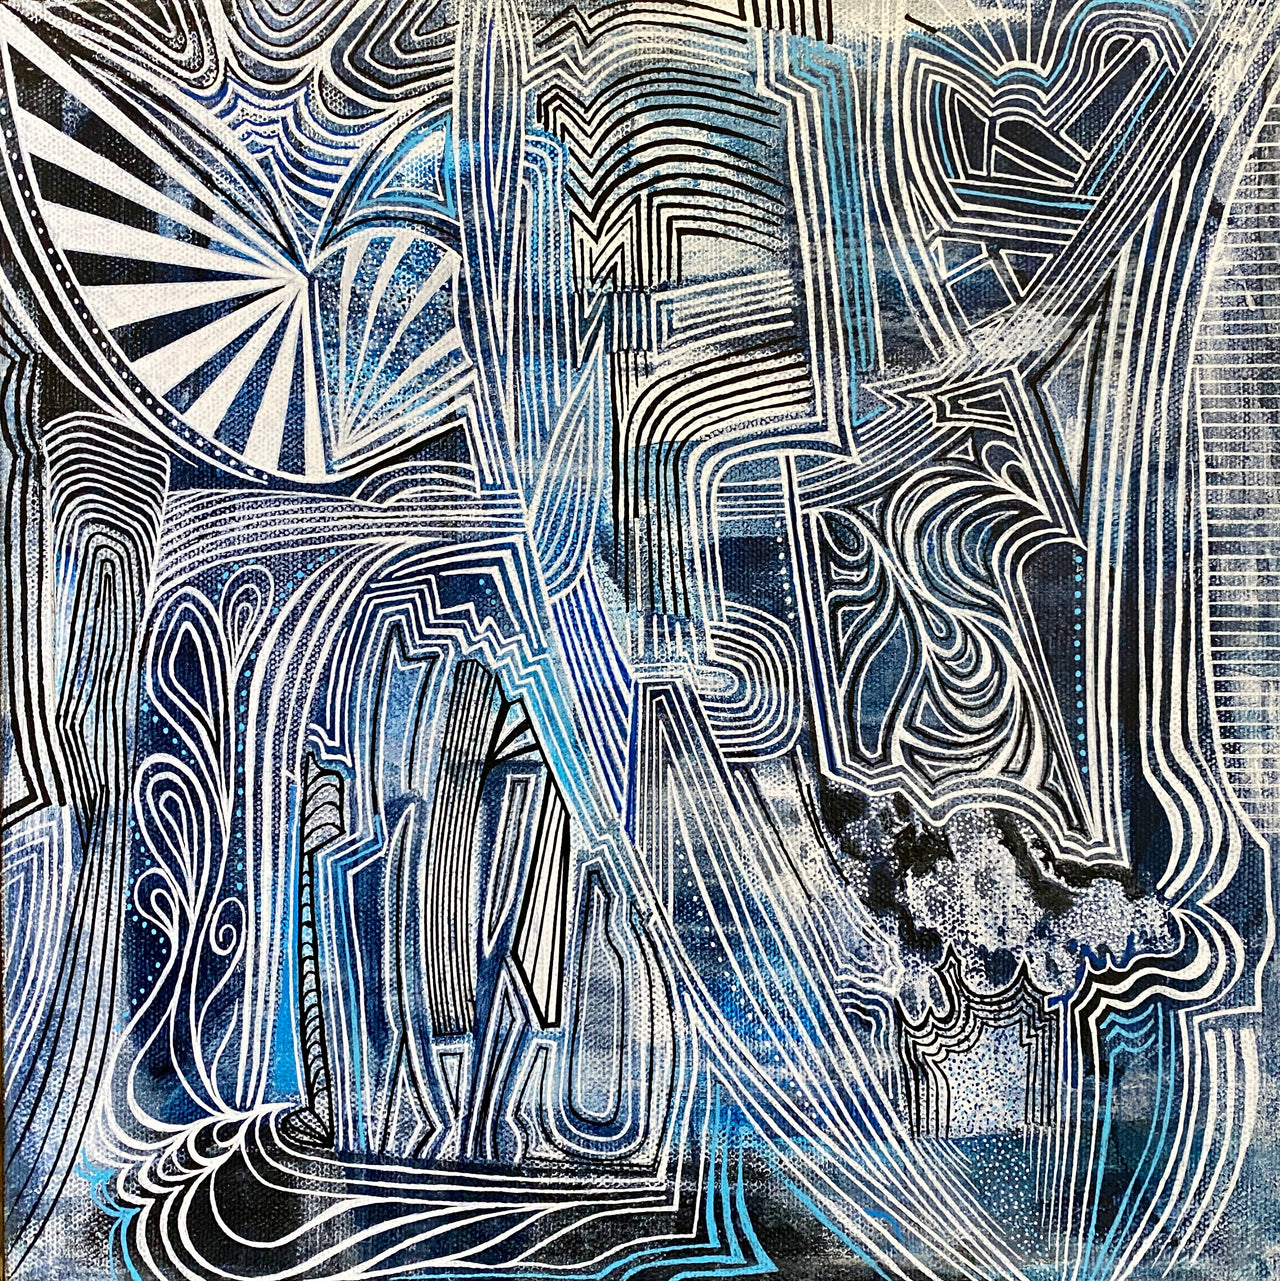 Consciousness 3 - 12" x 12" acrylic + multi-media on canvas